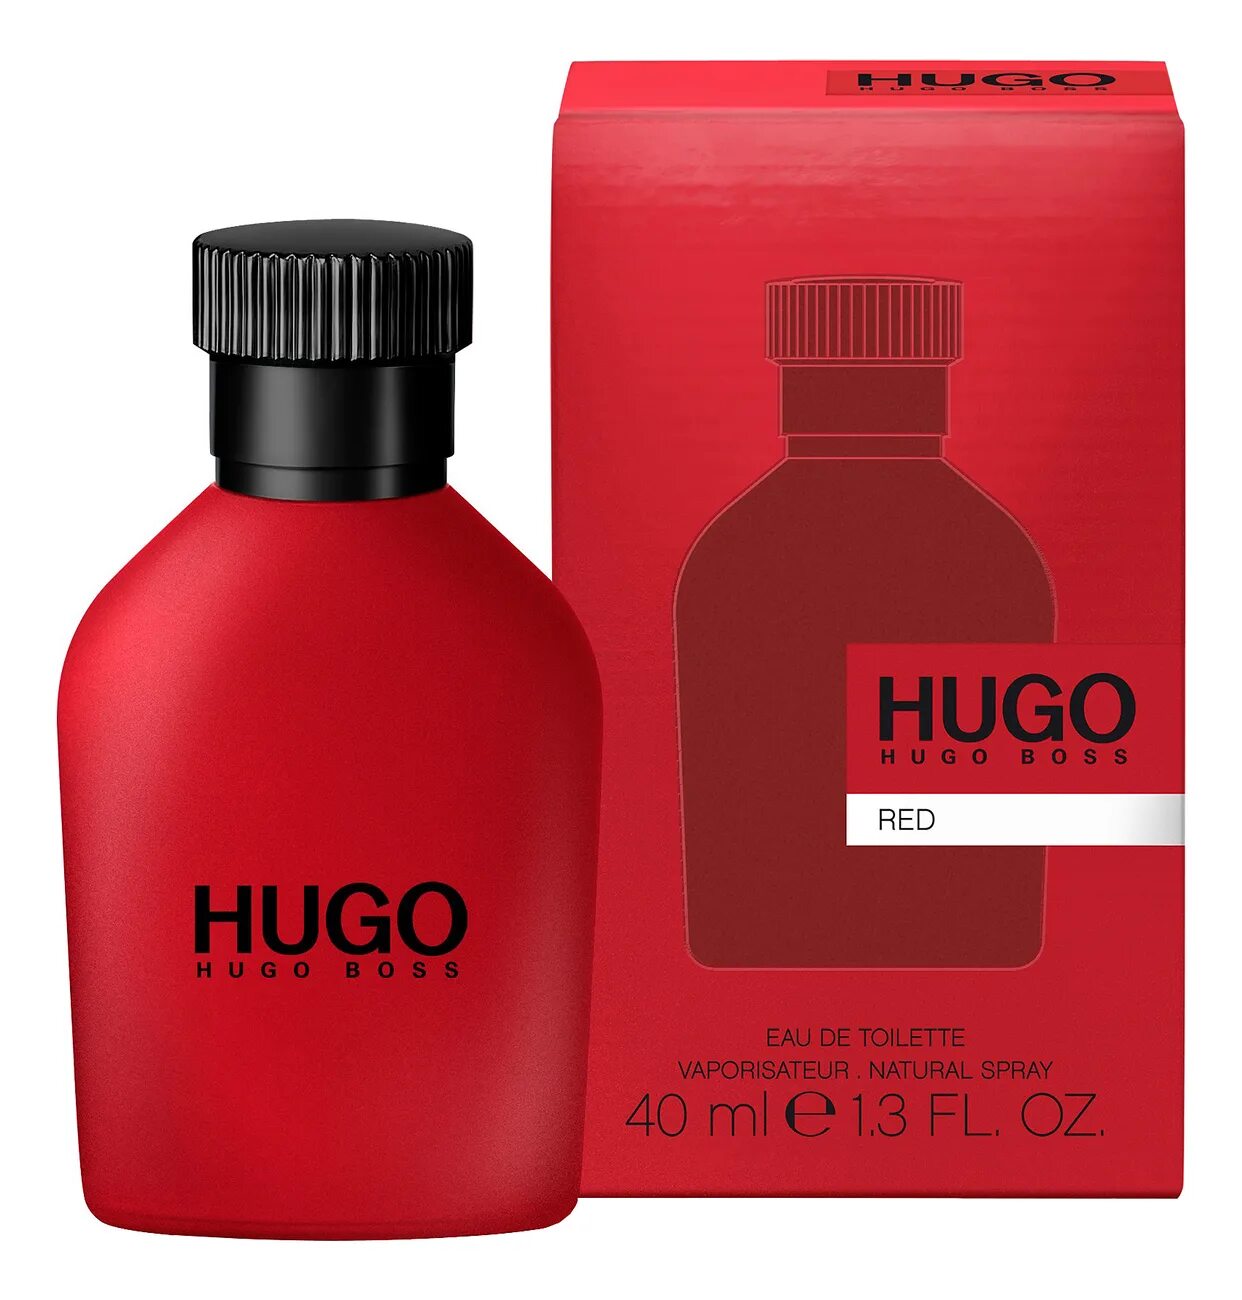 Hugo min. Hugo Boss "Hugo Red" EDT, 100ml. Hugo Boss Red, EDT., 150 ml. Hugo Boss Red EDT Хьюго босс ред туалетная вода 150 ml. Hugo Boss мужской Hugo туалетная вода (EDT) 40мл.